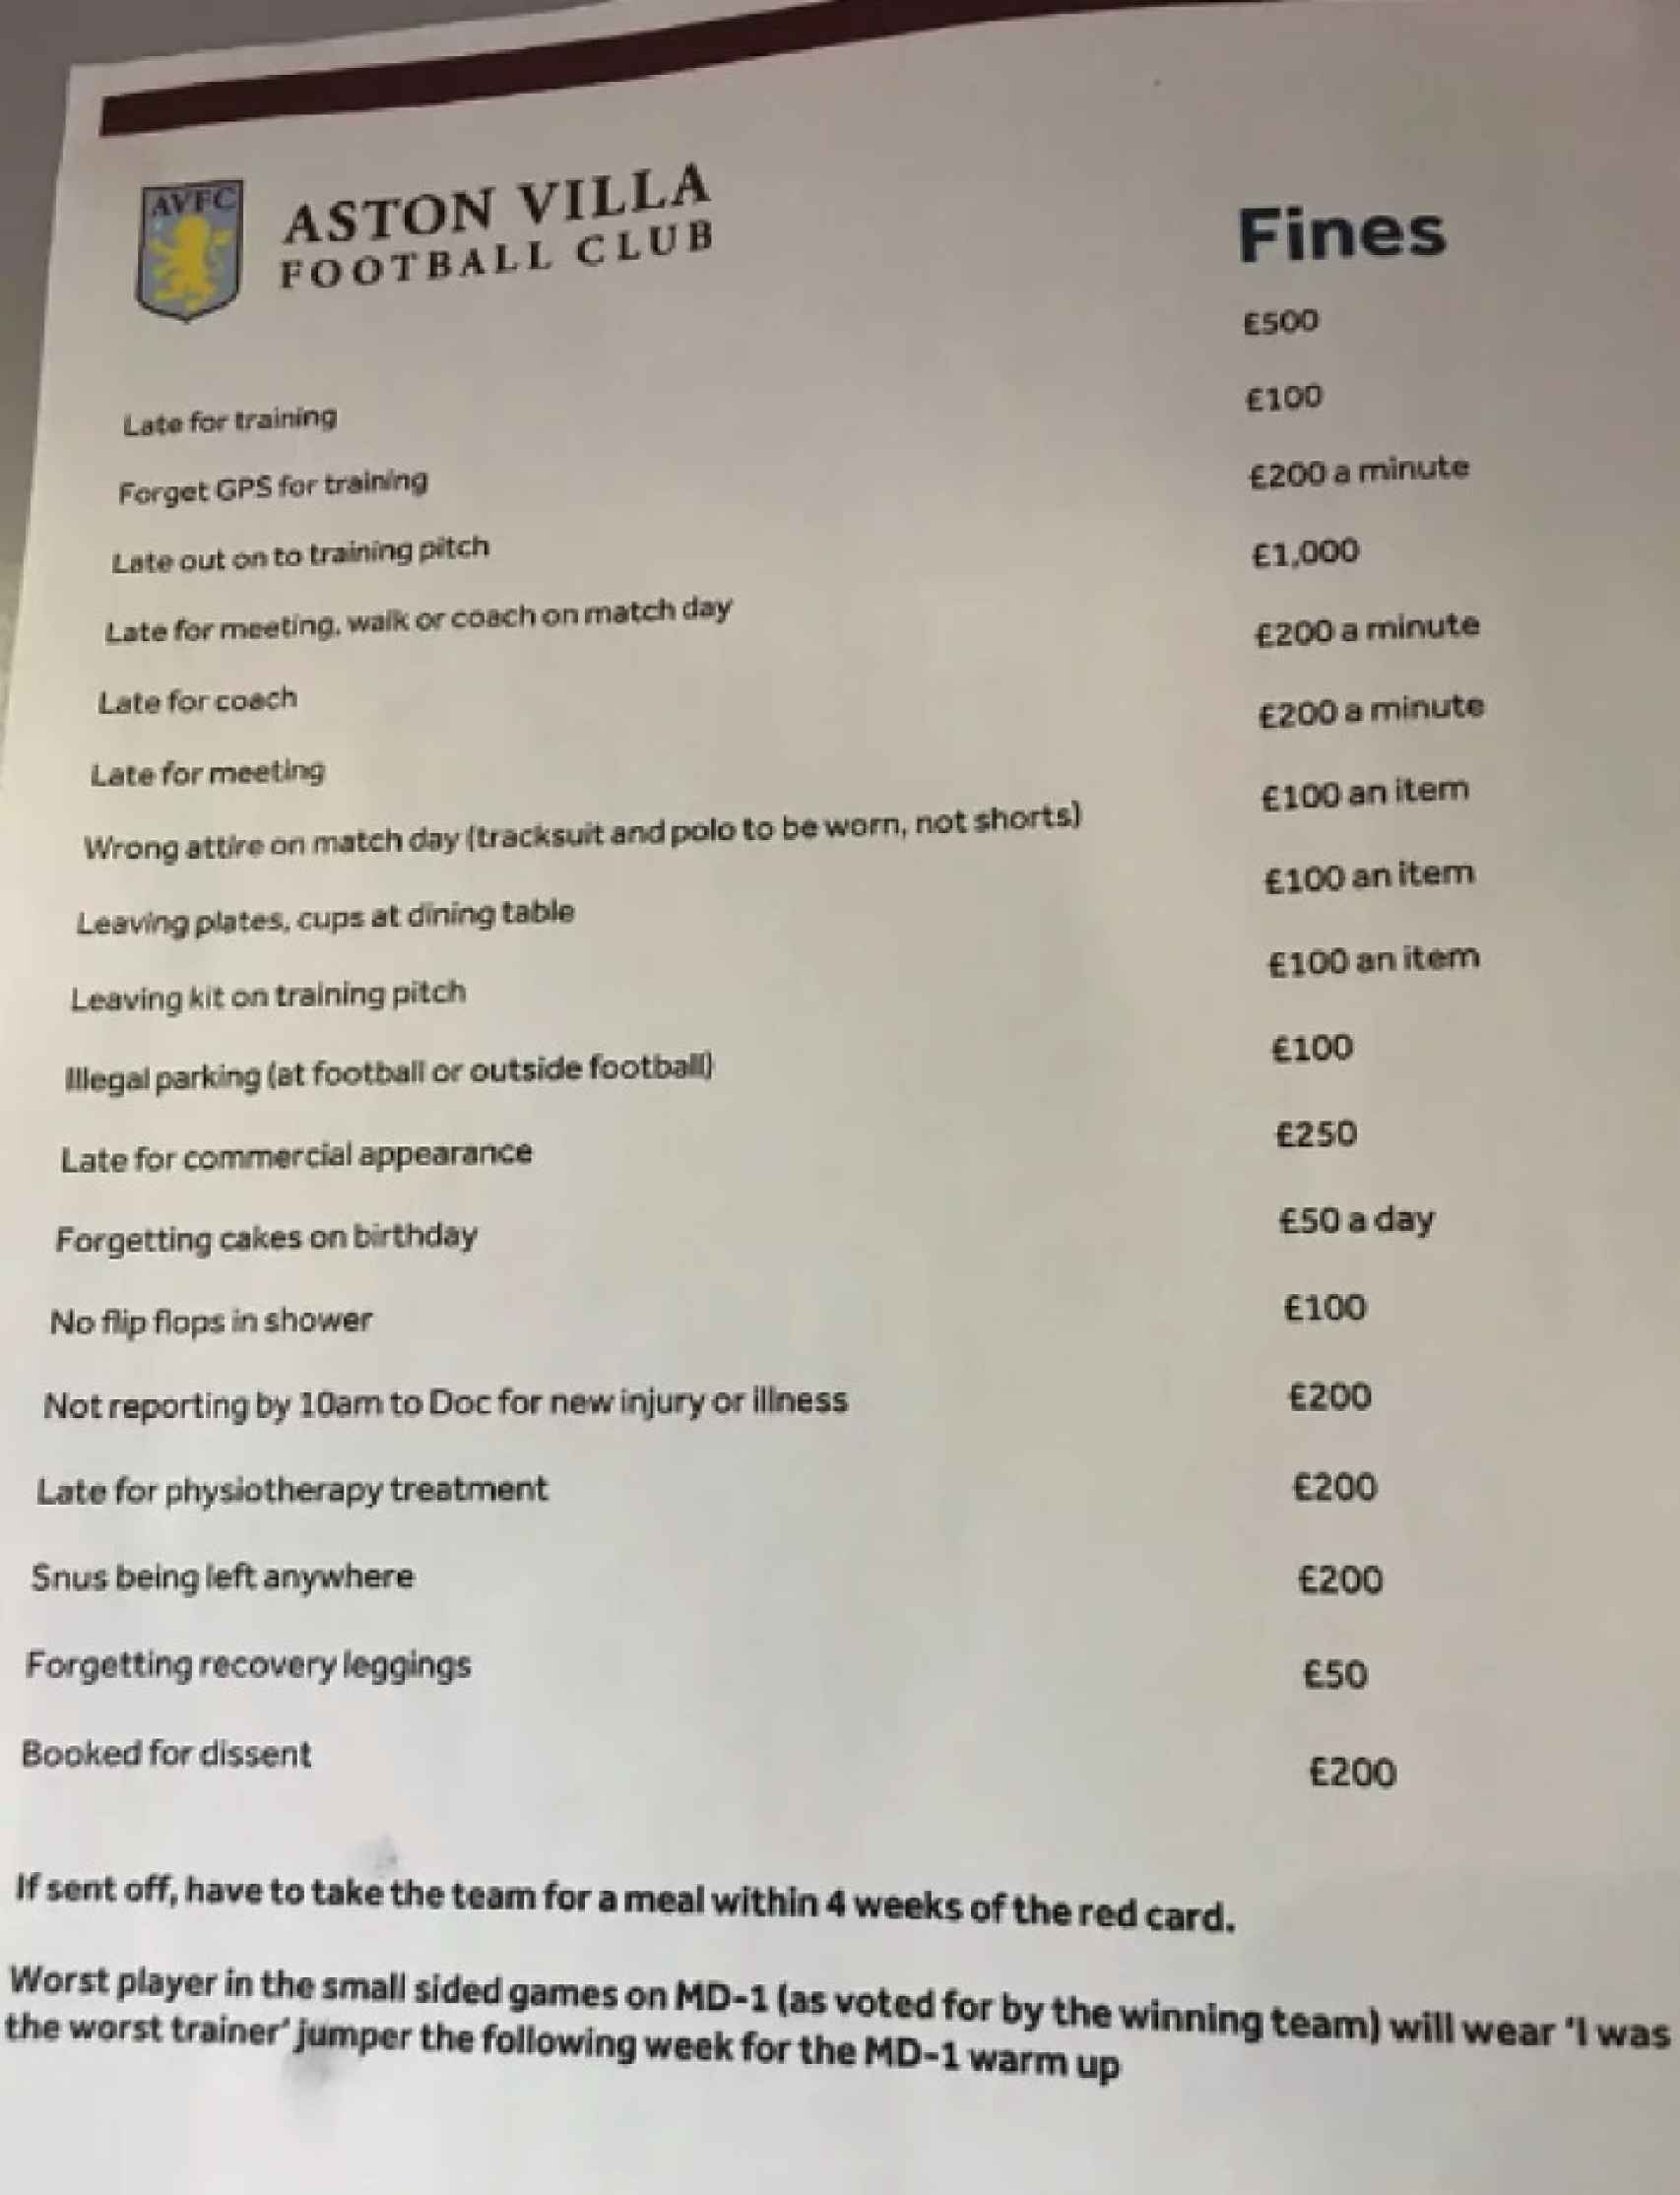 La lista de multas de Steven Gerrard en el vestuario del Aston Villa